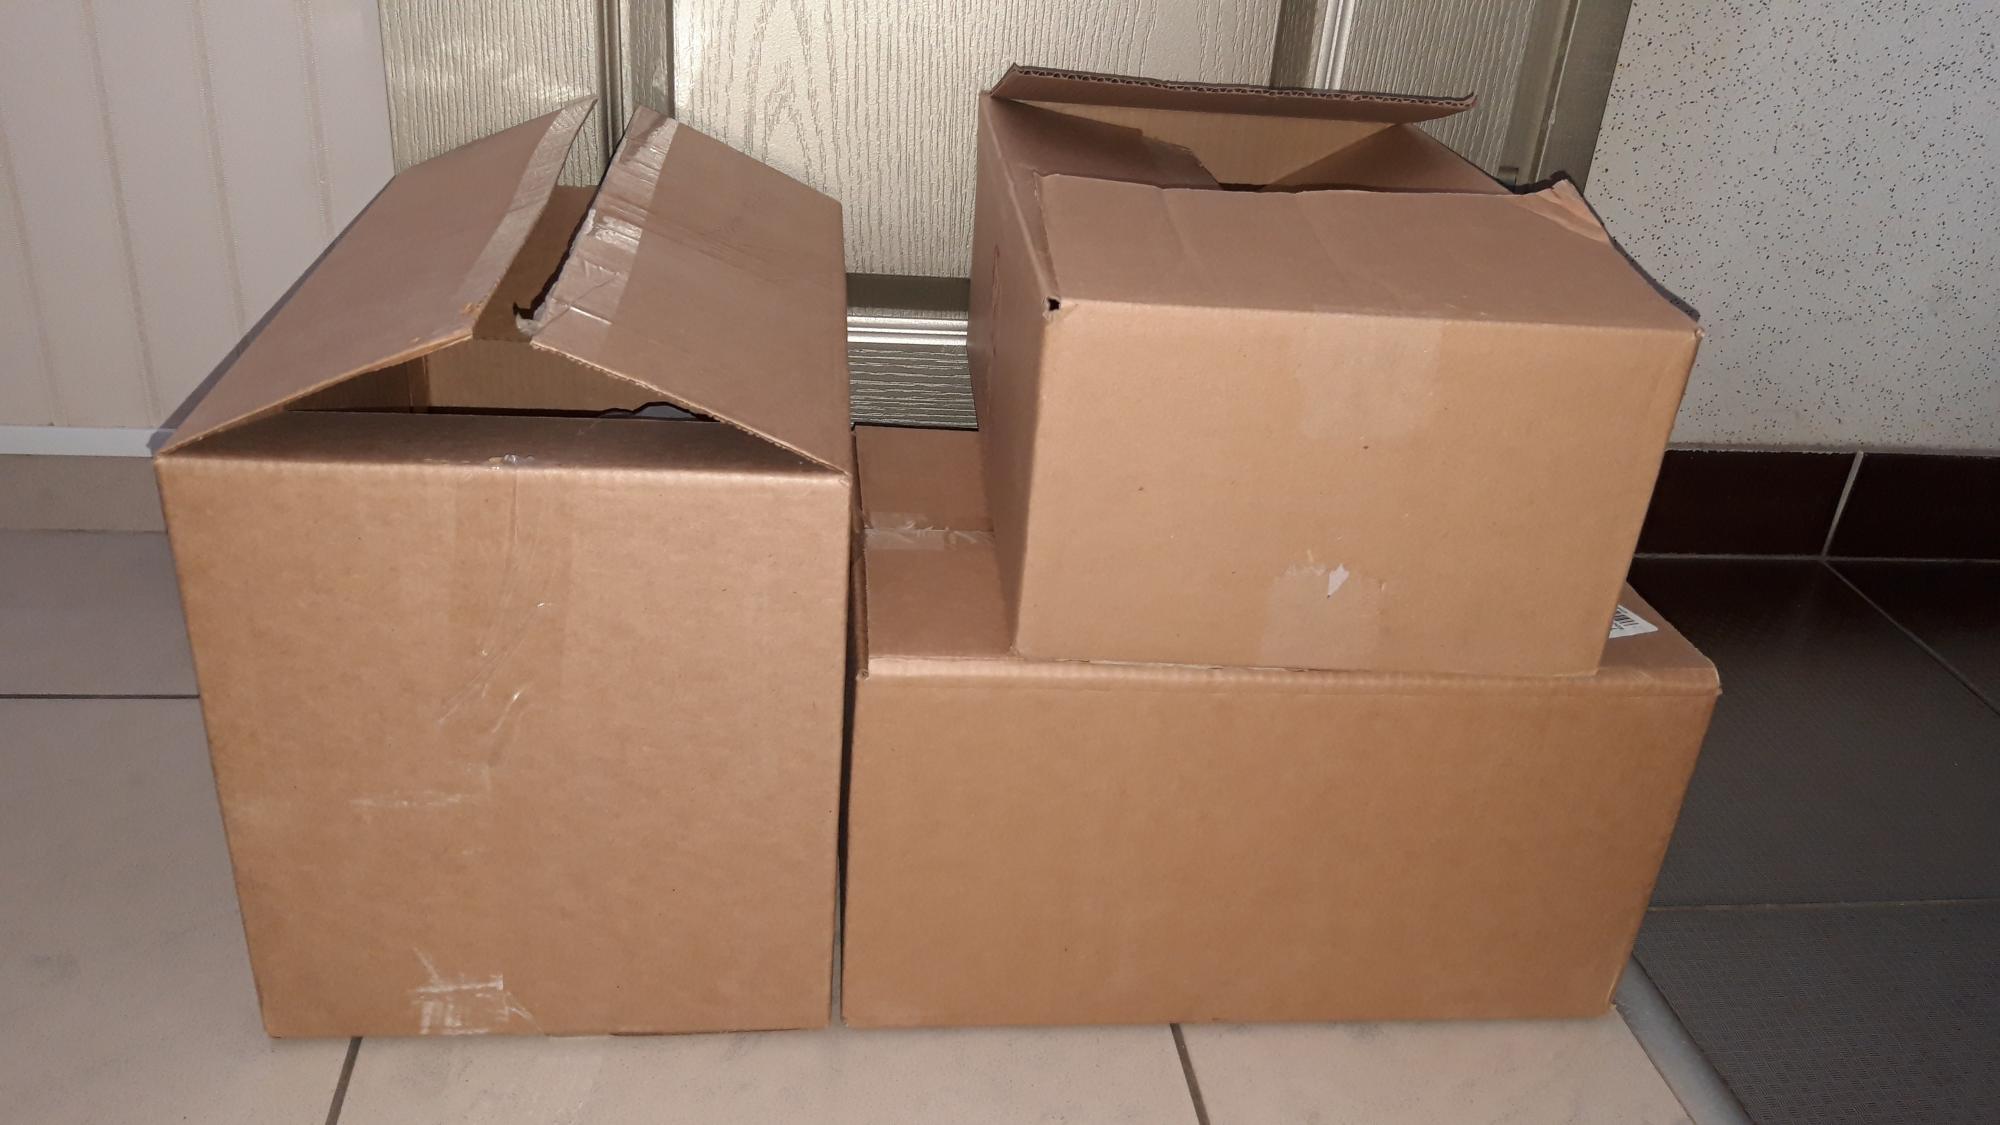 Продам коробку большую. Фирменная коробка стройматериалы. Авито картонные коробки с раздаткой.